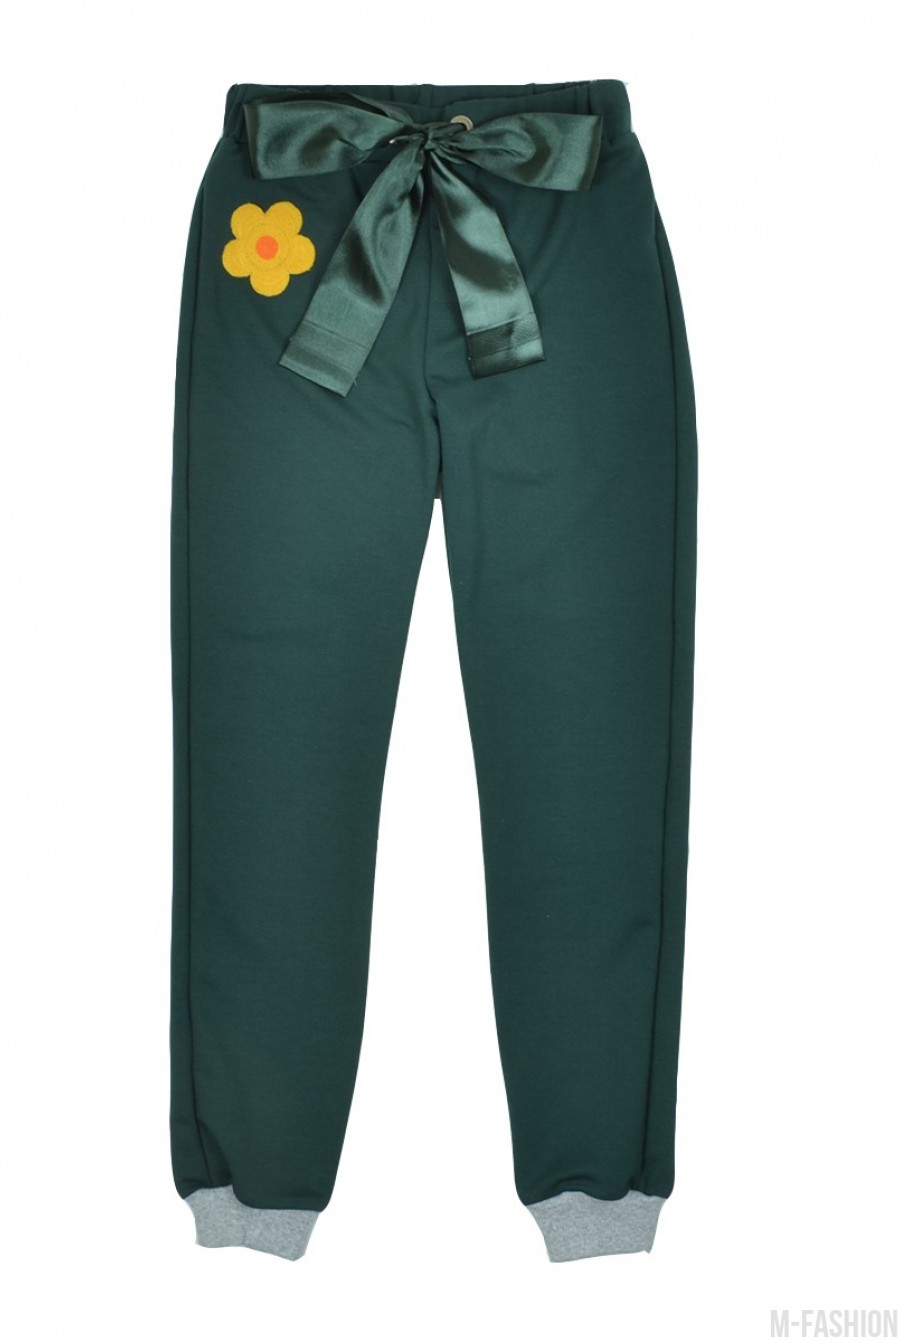 Спортивные штаны с яркими цветочными нашивками - Фото 1